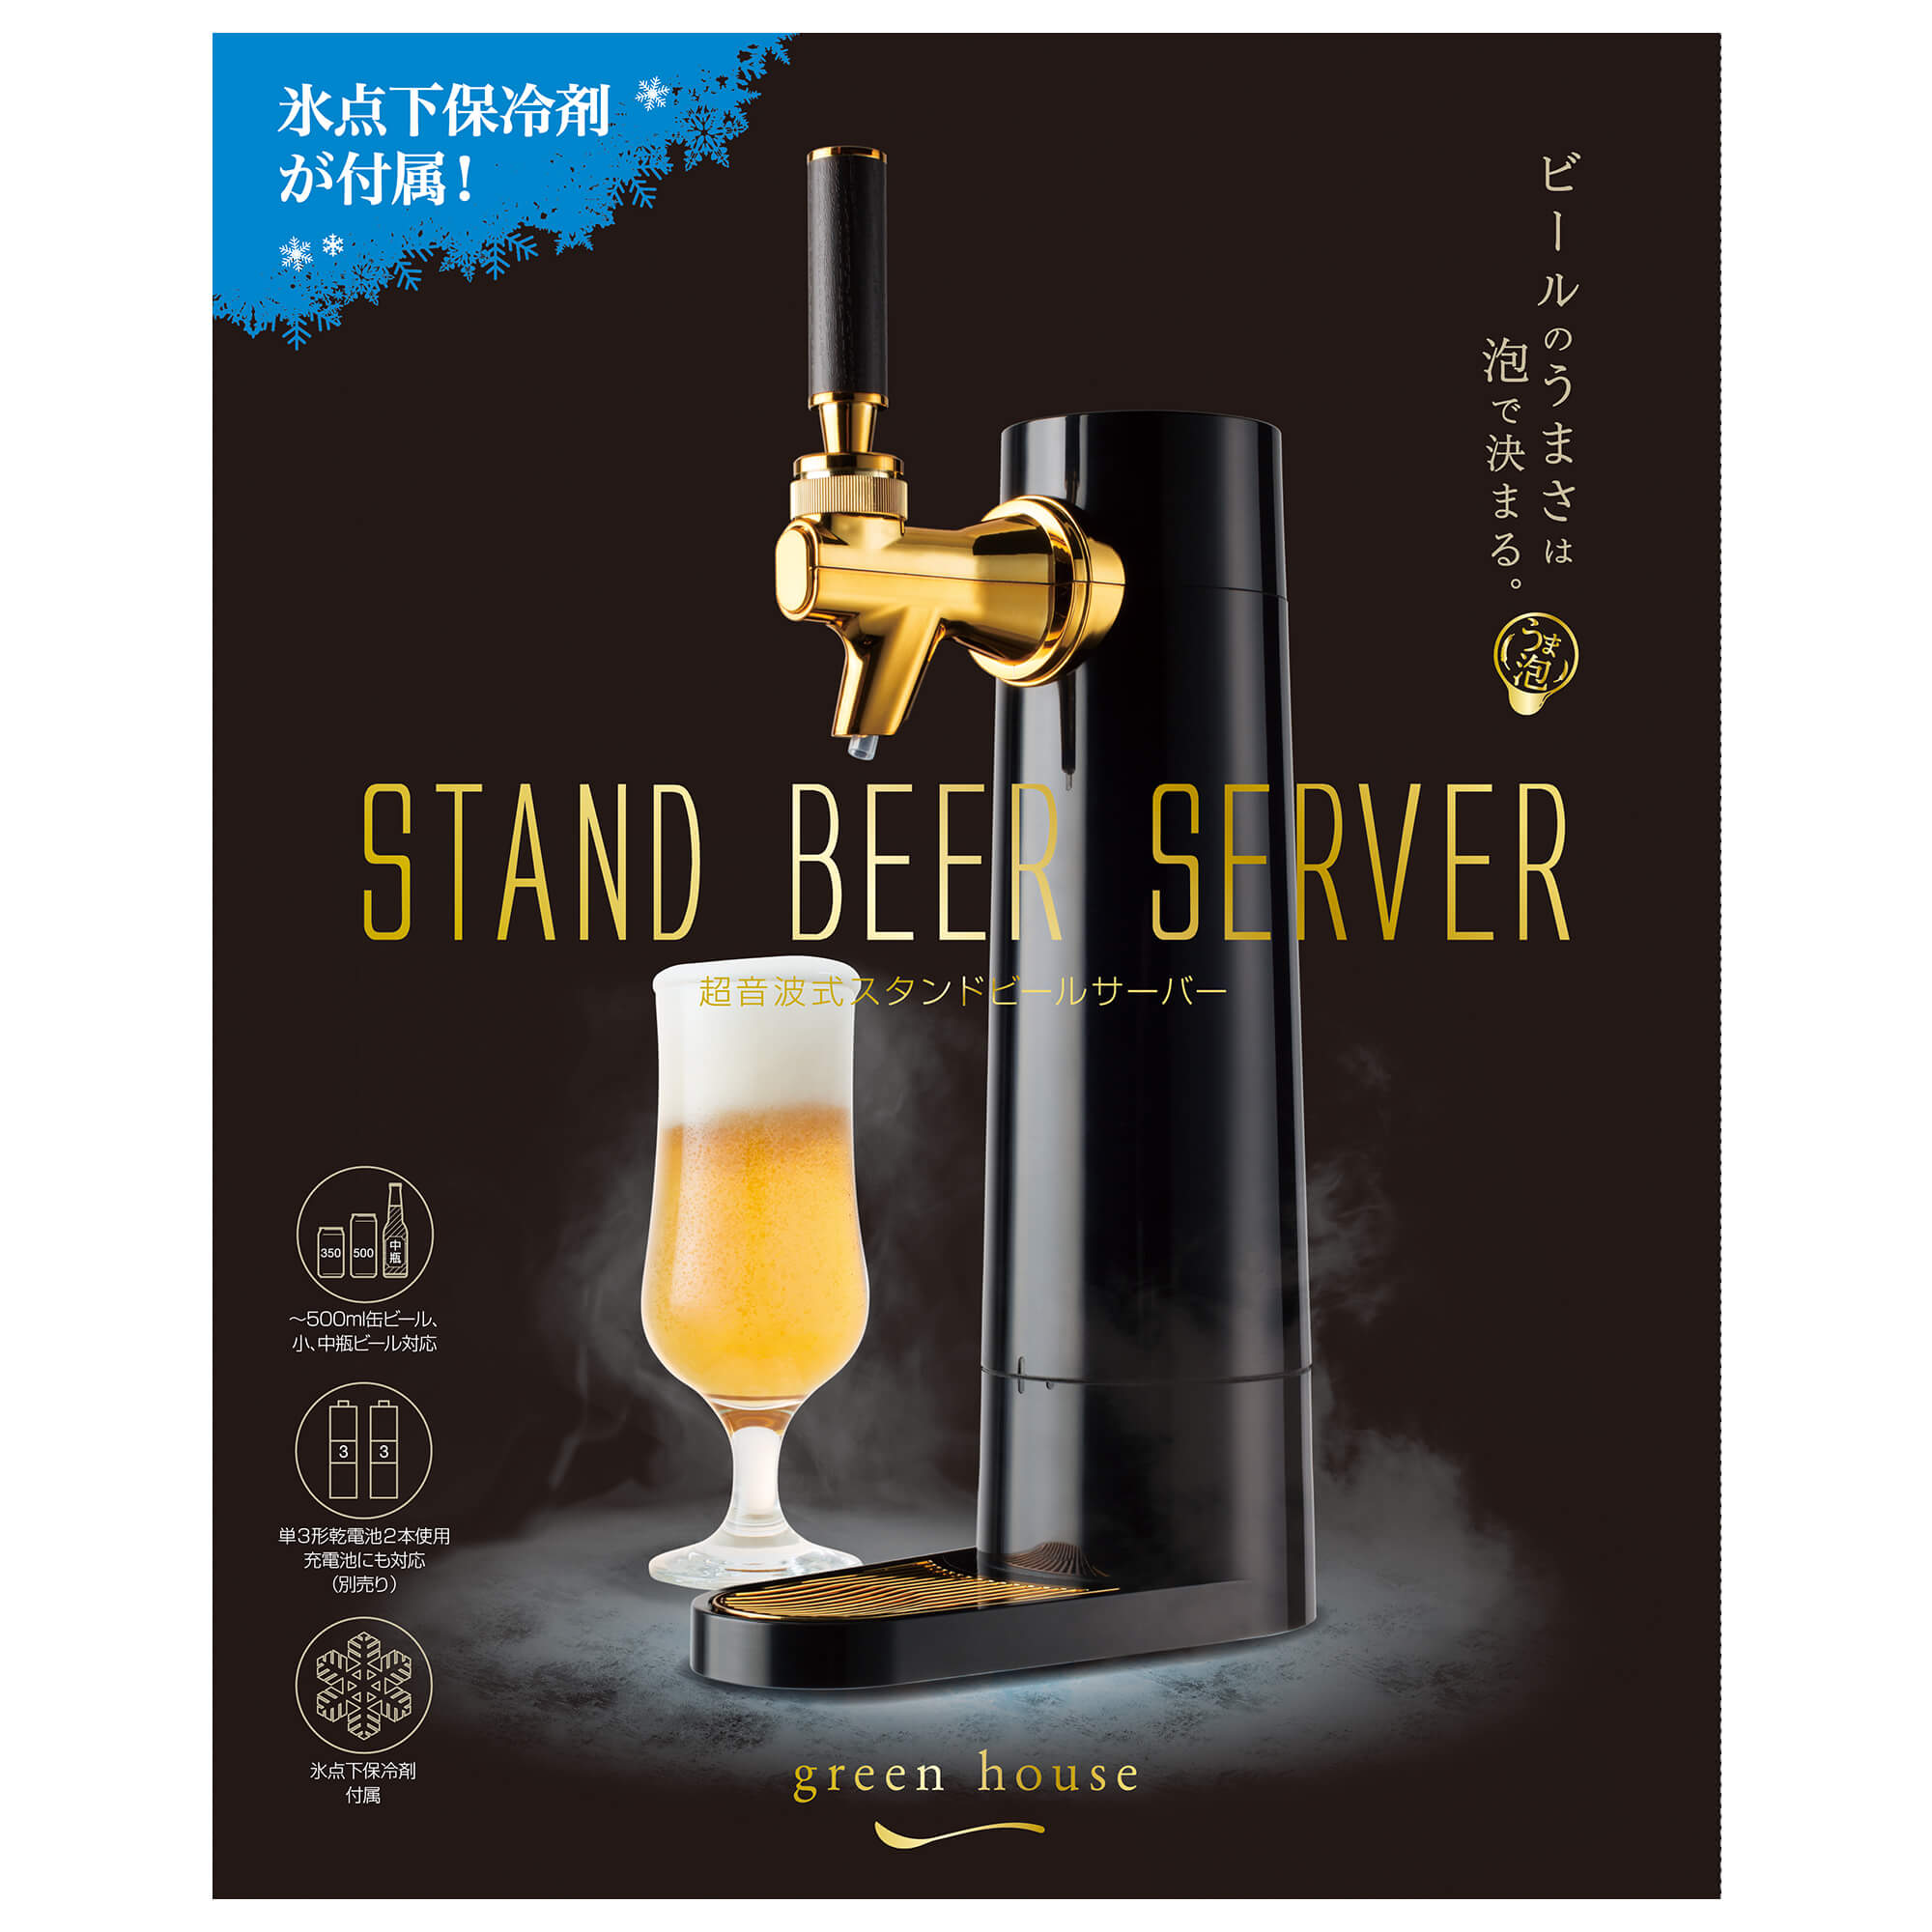 売上実績NO.1 beer server ビールサーバー グリーンハウス 超音波式缶ビールサーバー